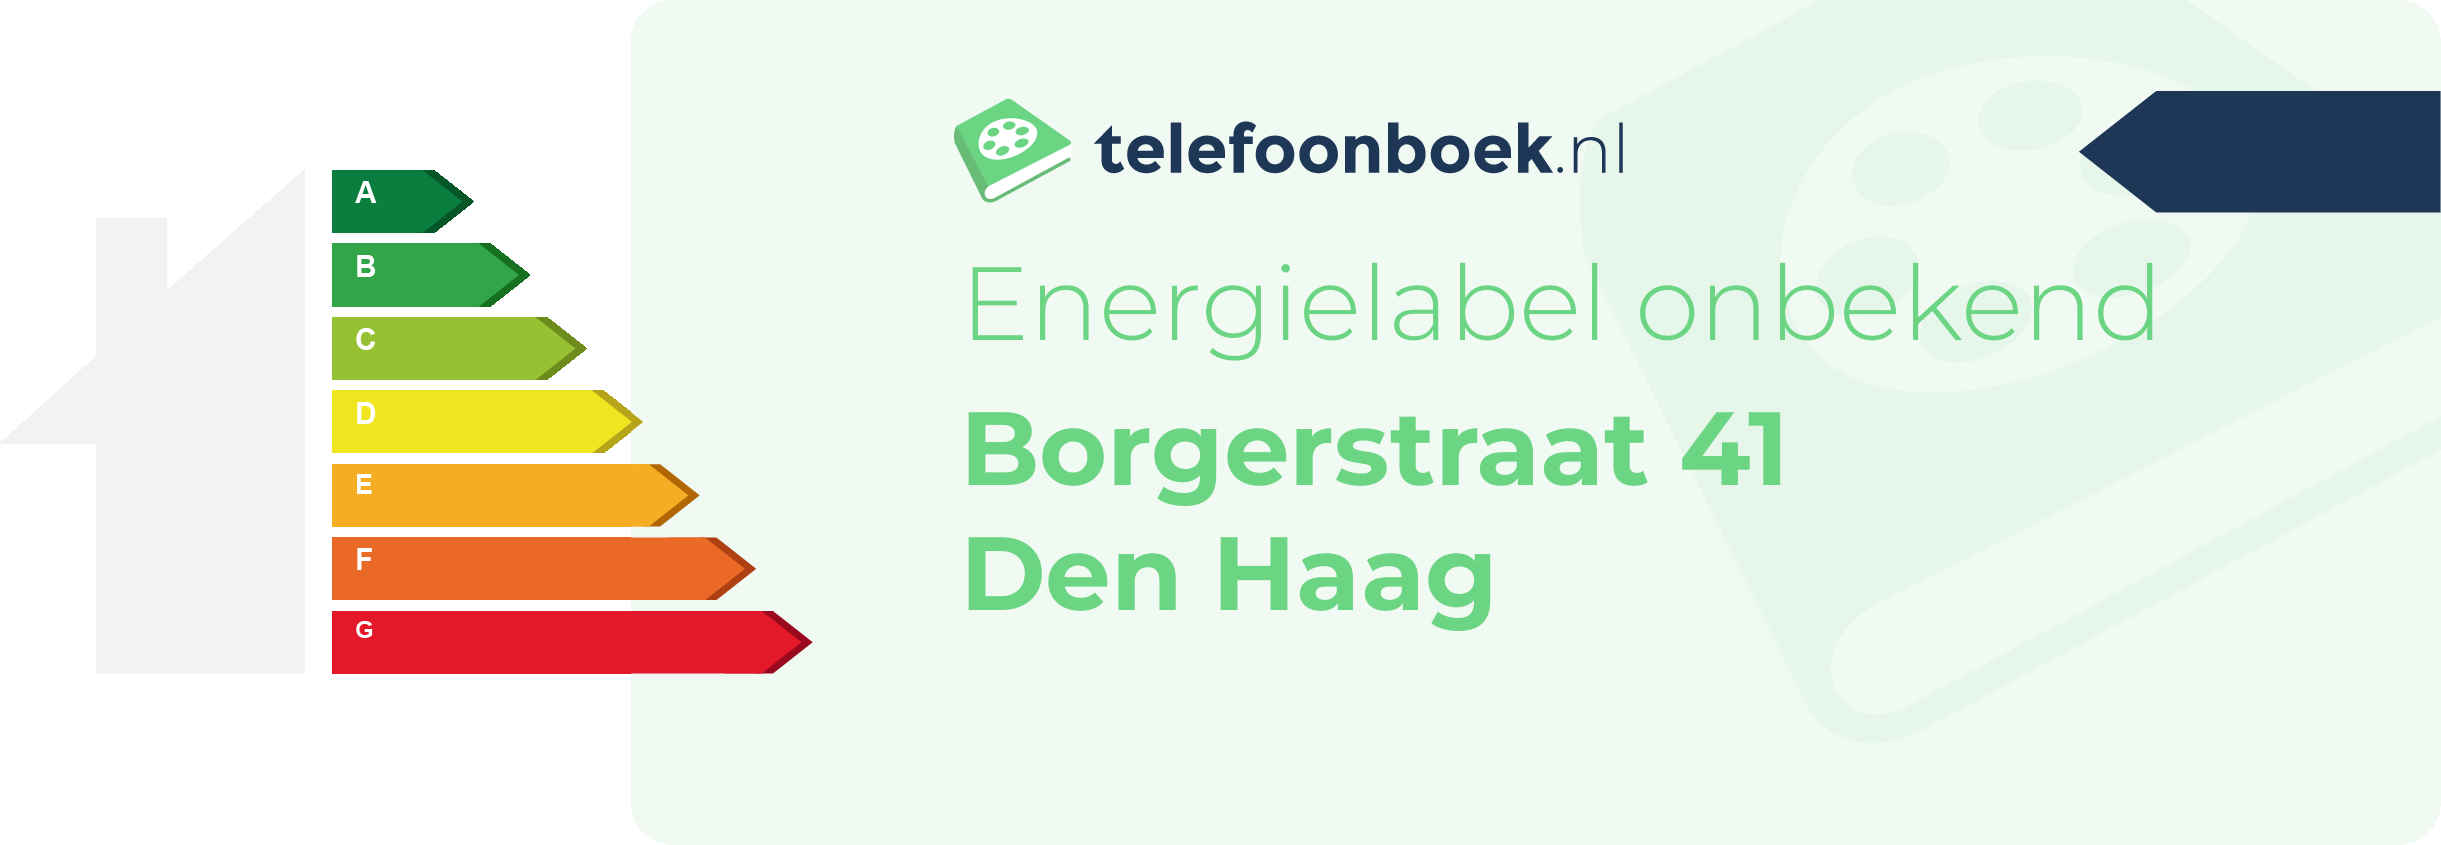 Energielabel Borgerstraat 41 Den Haag